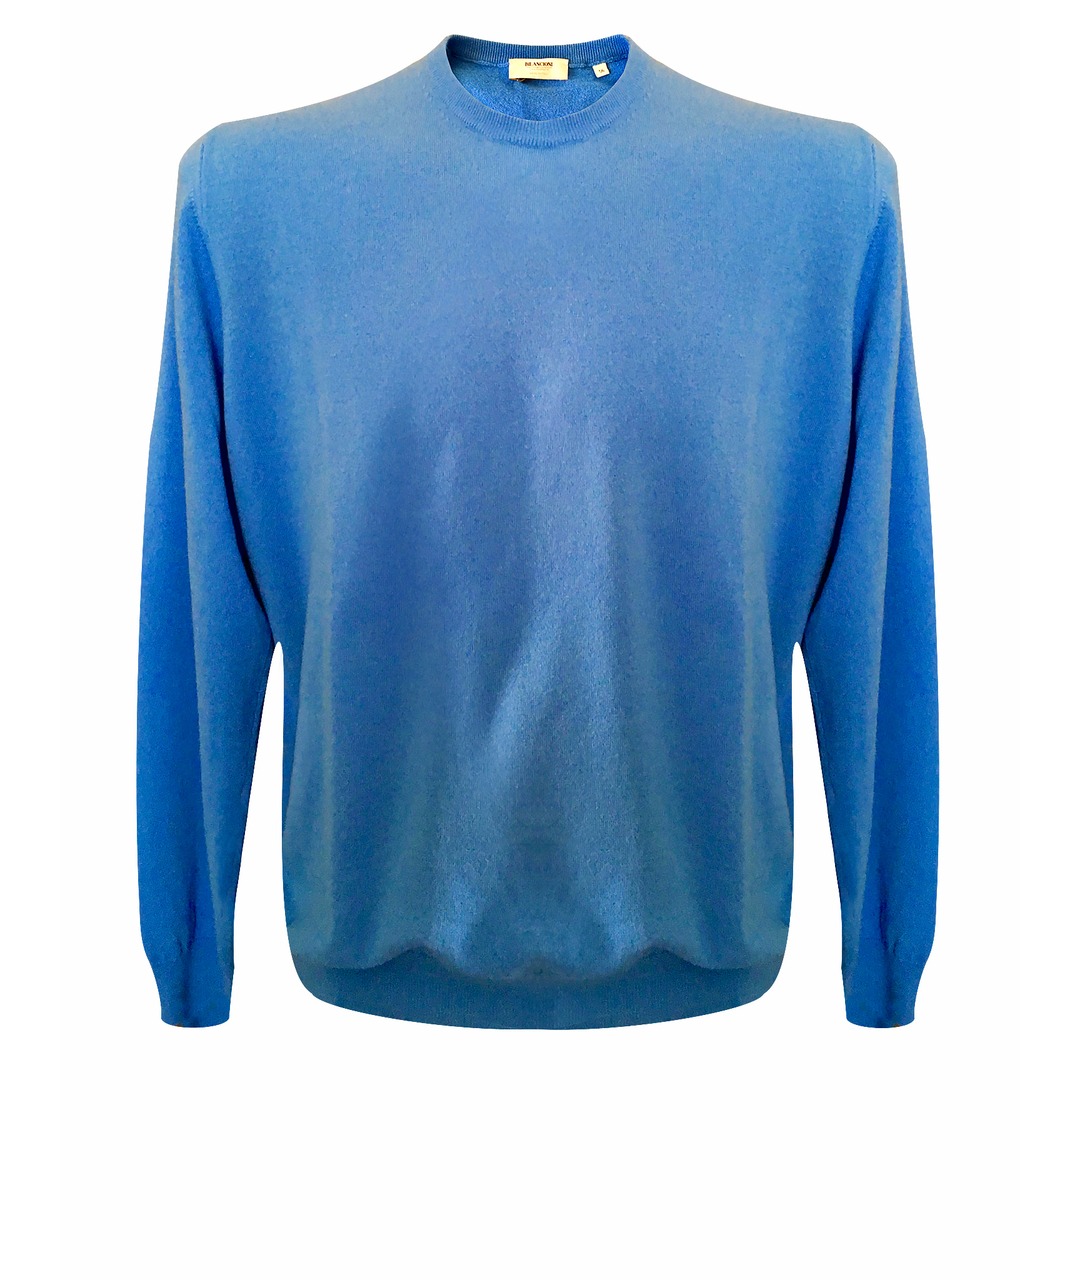 BILANCIONI Синий кашемировый джемпер / свитер, фото 1